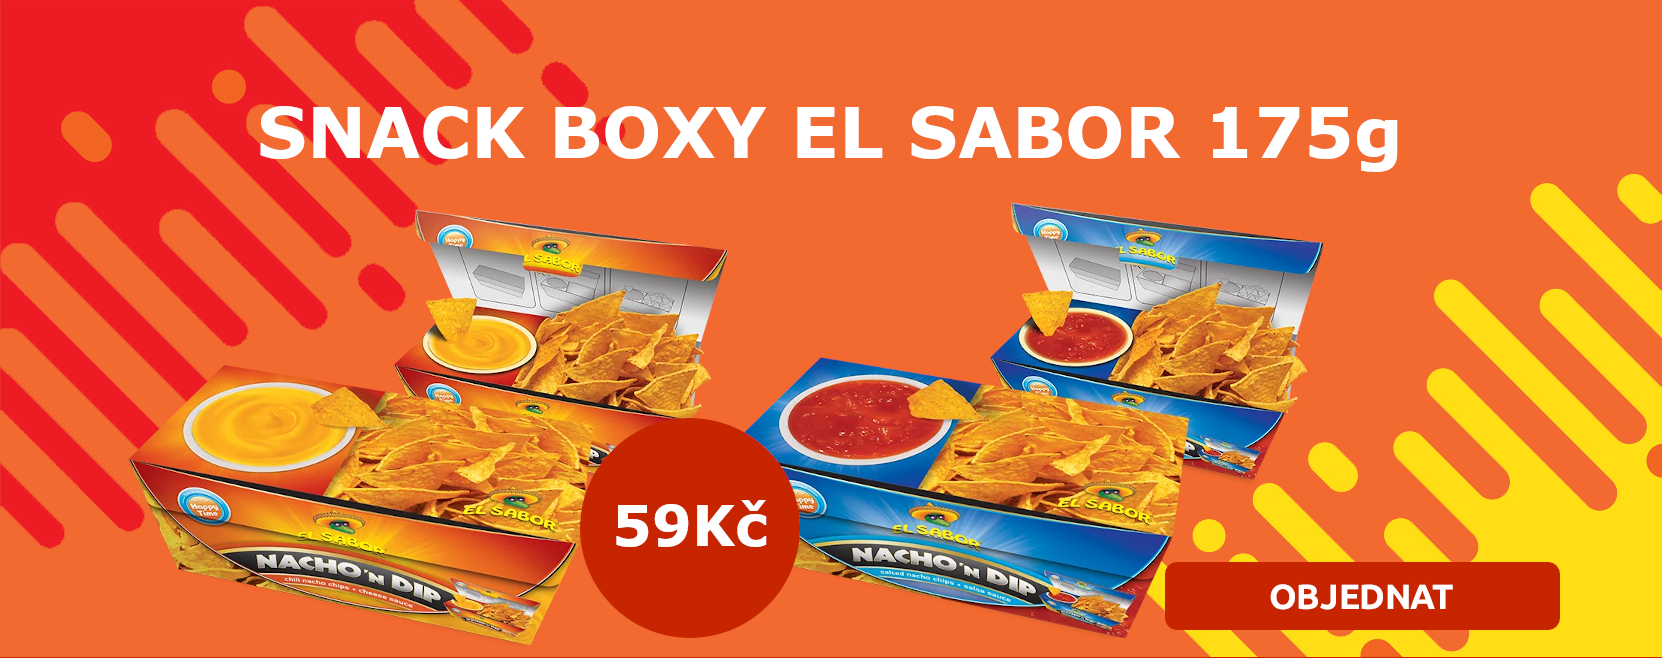 El Sabor tortilla chips snack box